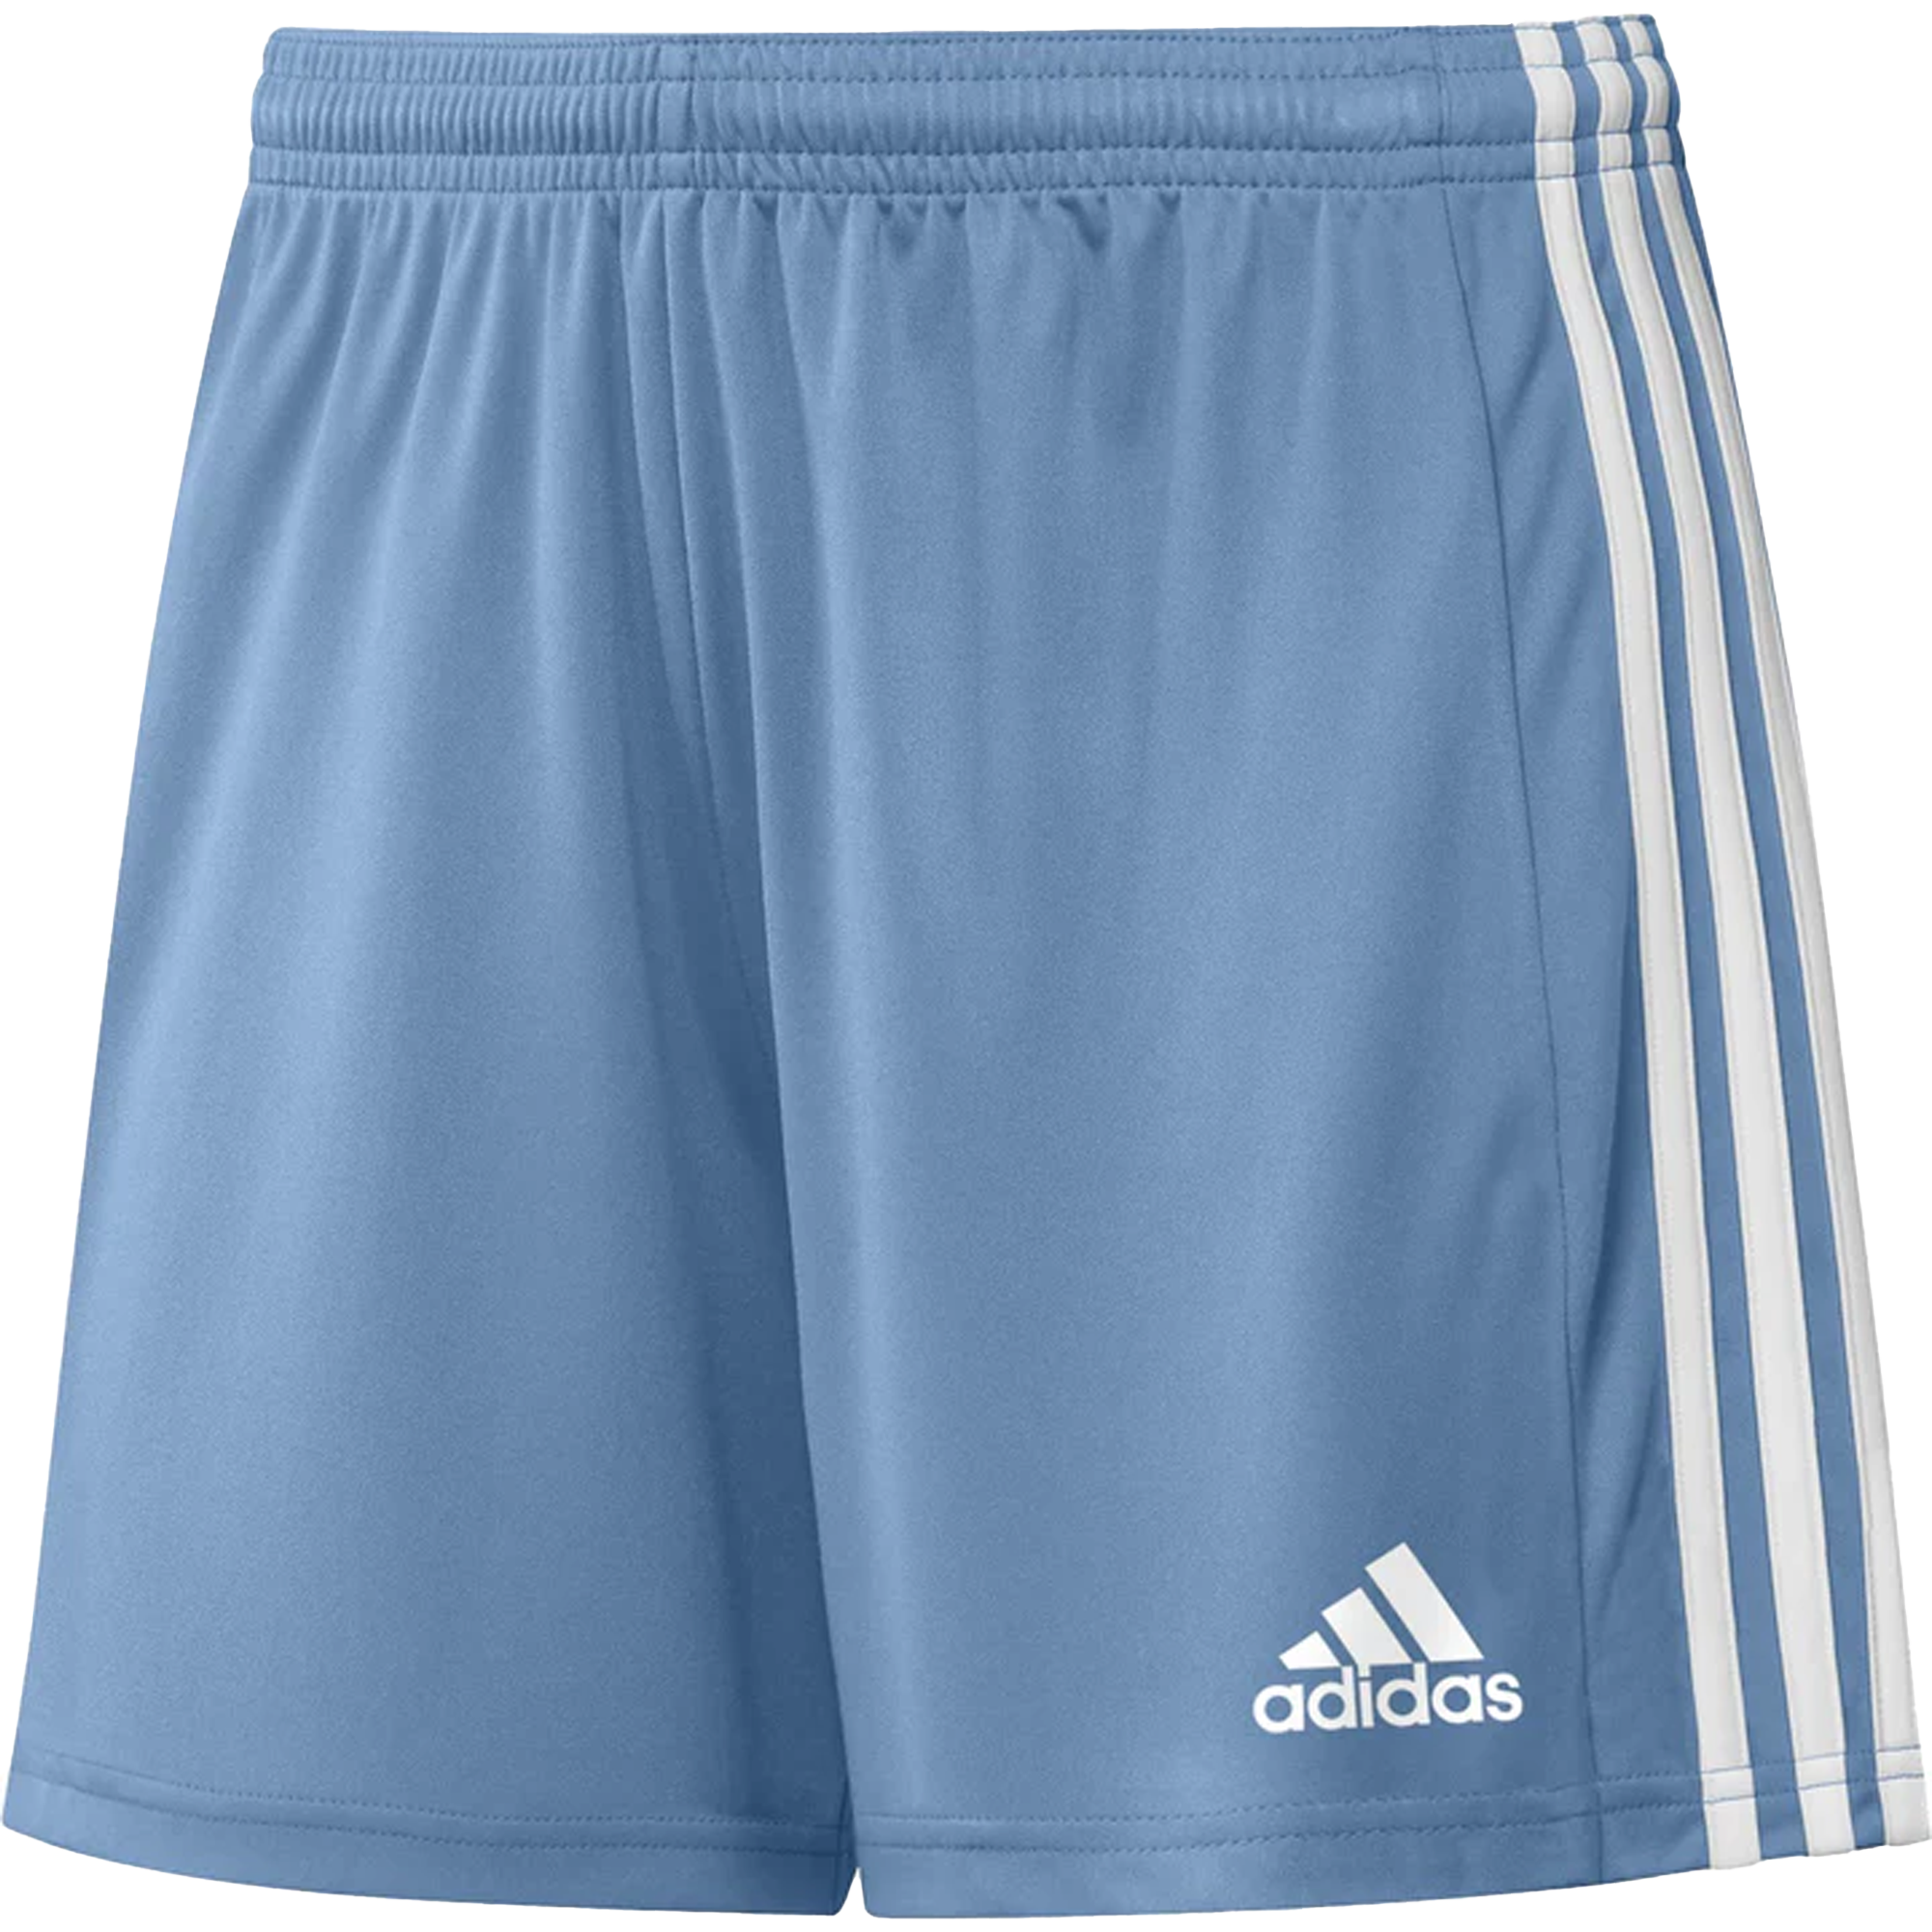 stefanssoccer.com:adidas Squadra Shorts - Light Blue White